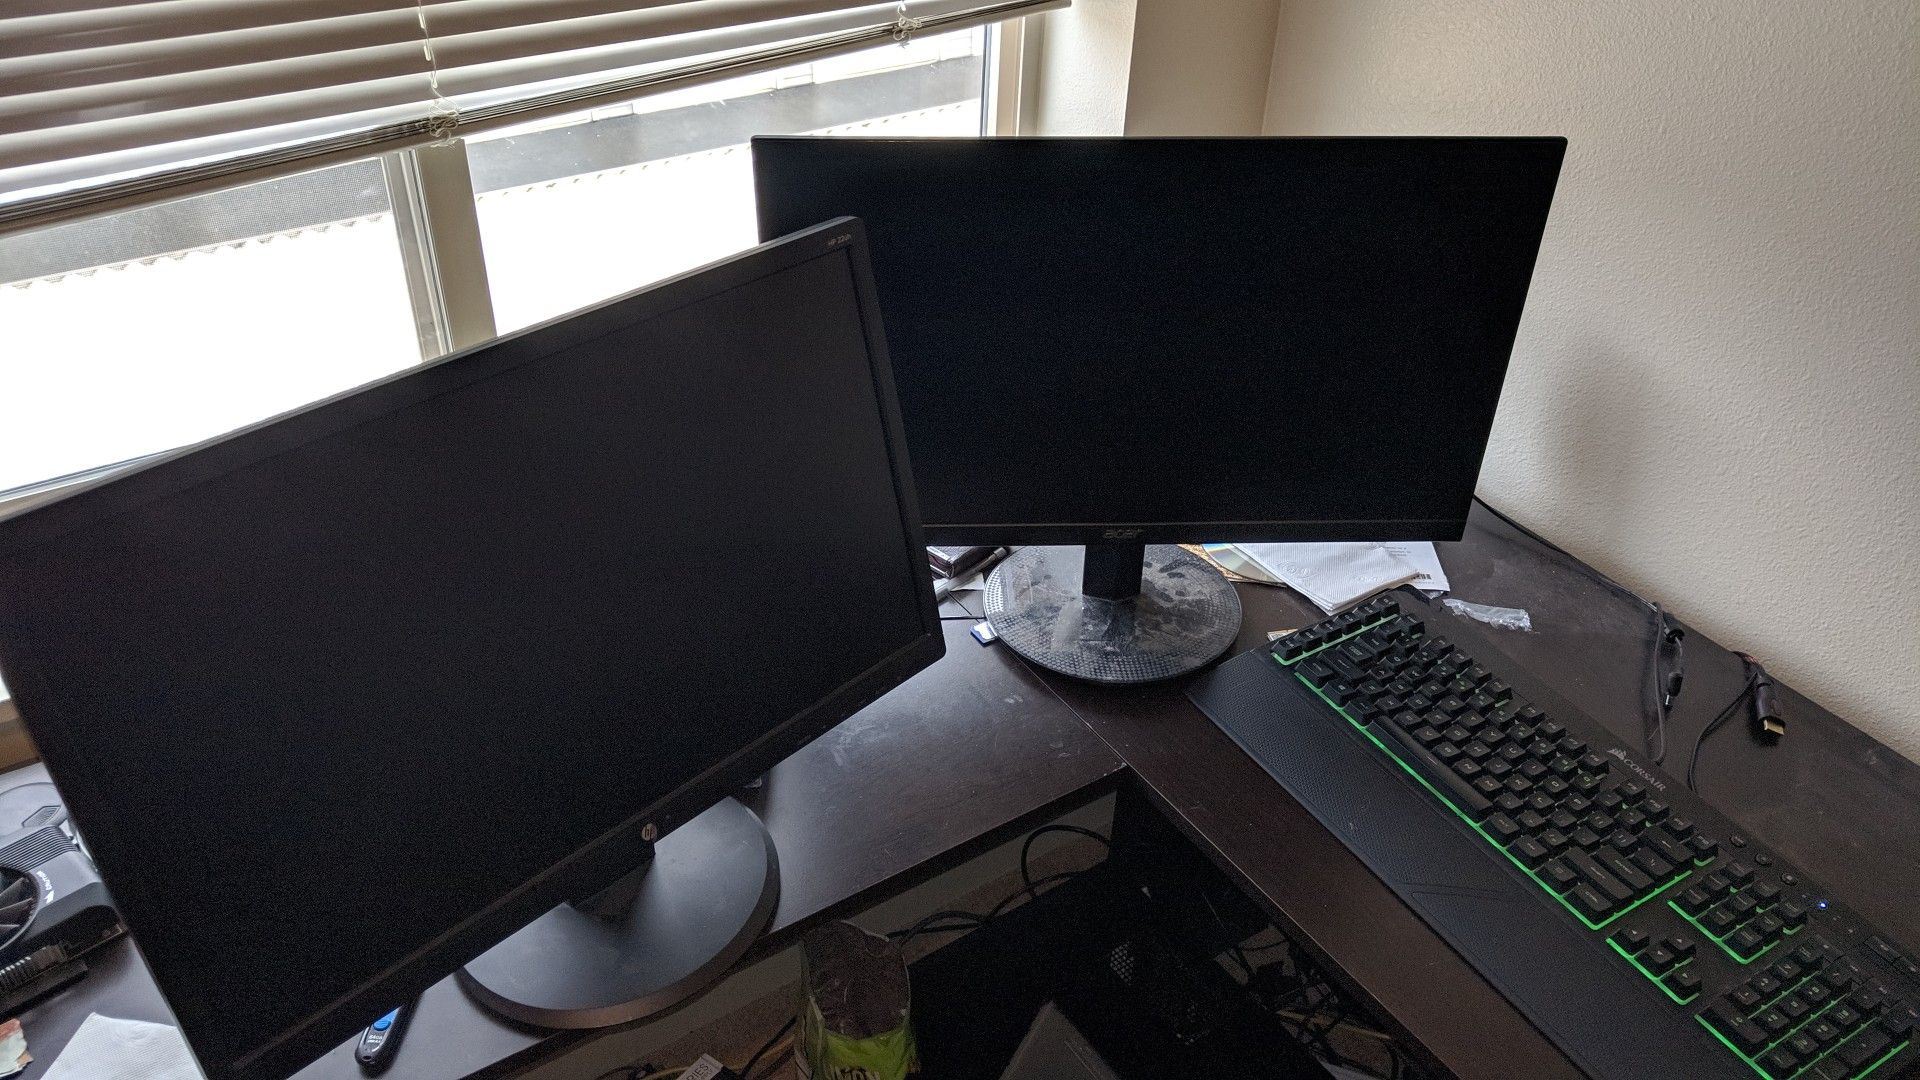 2 computer monitors